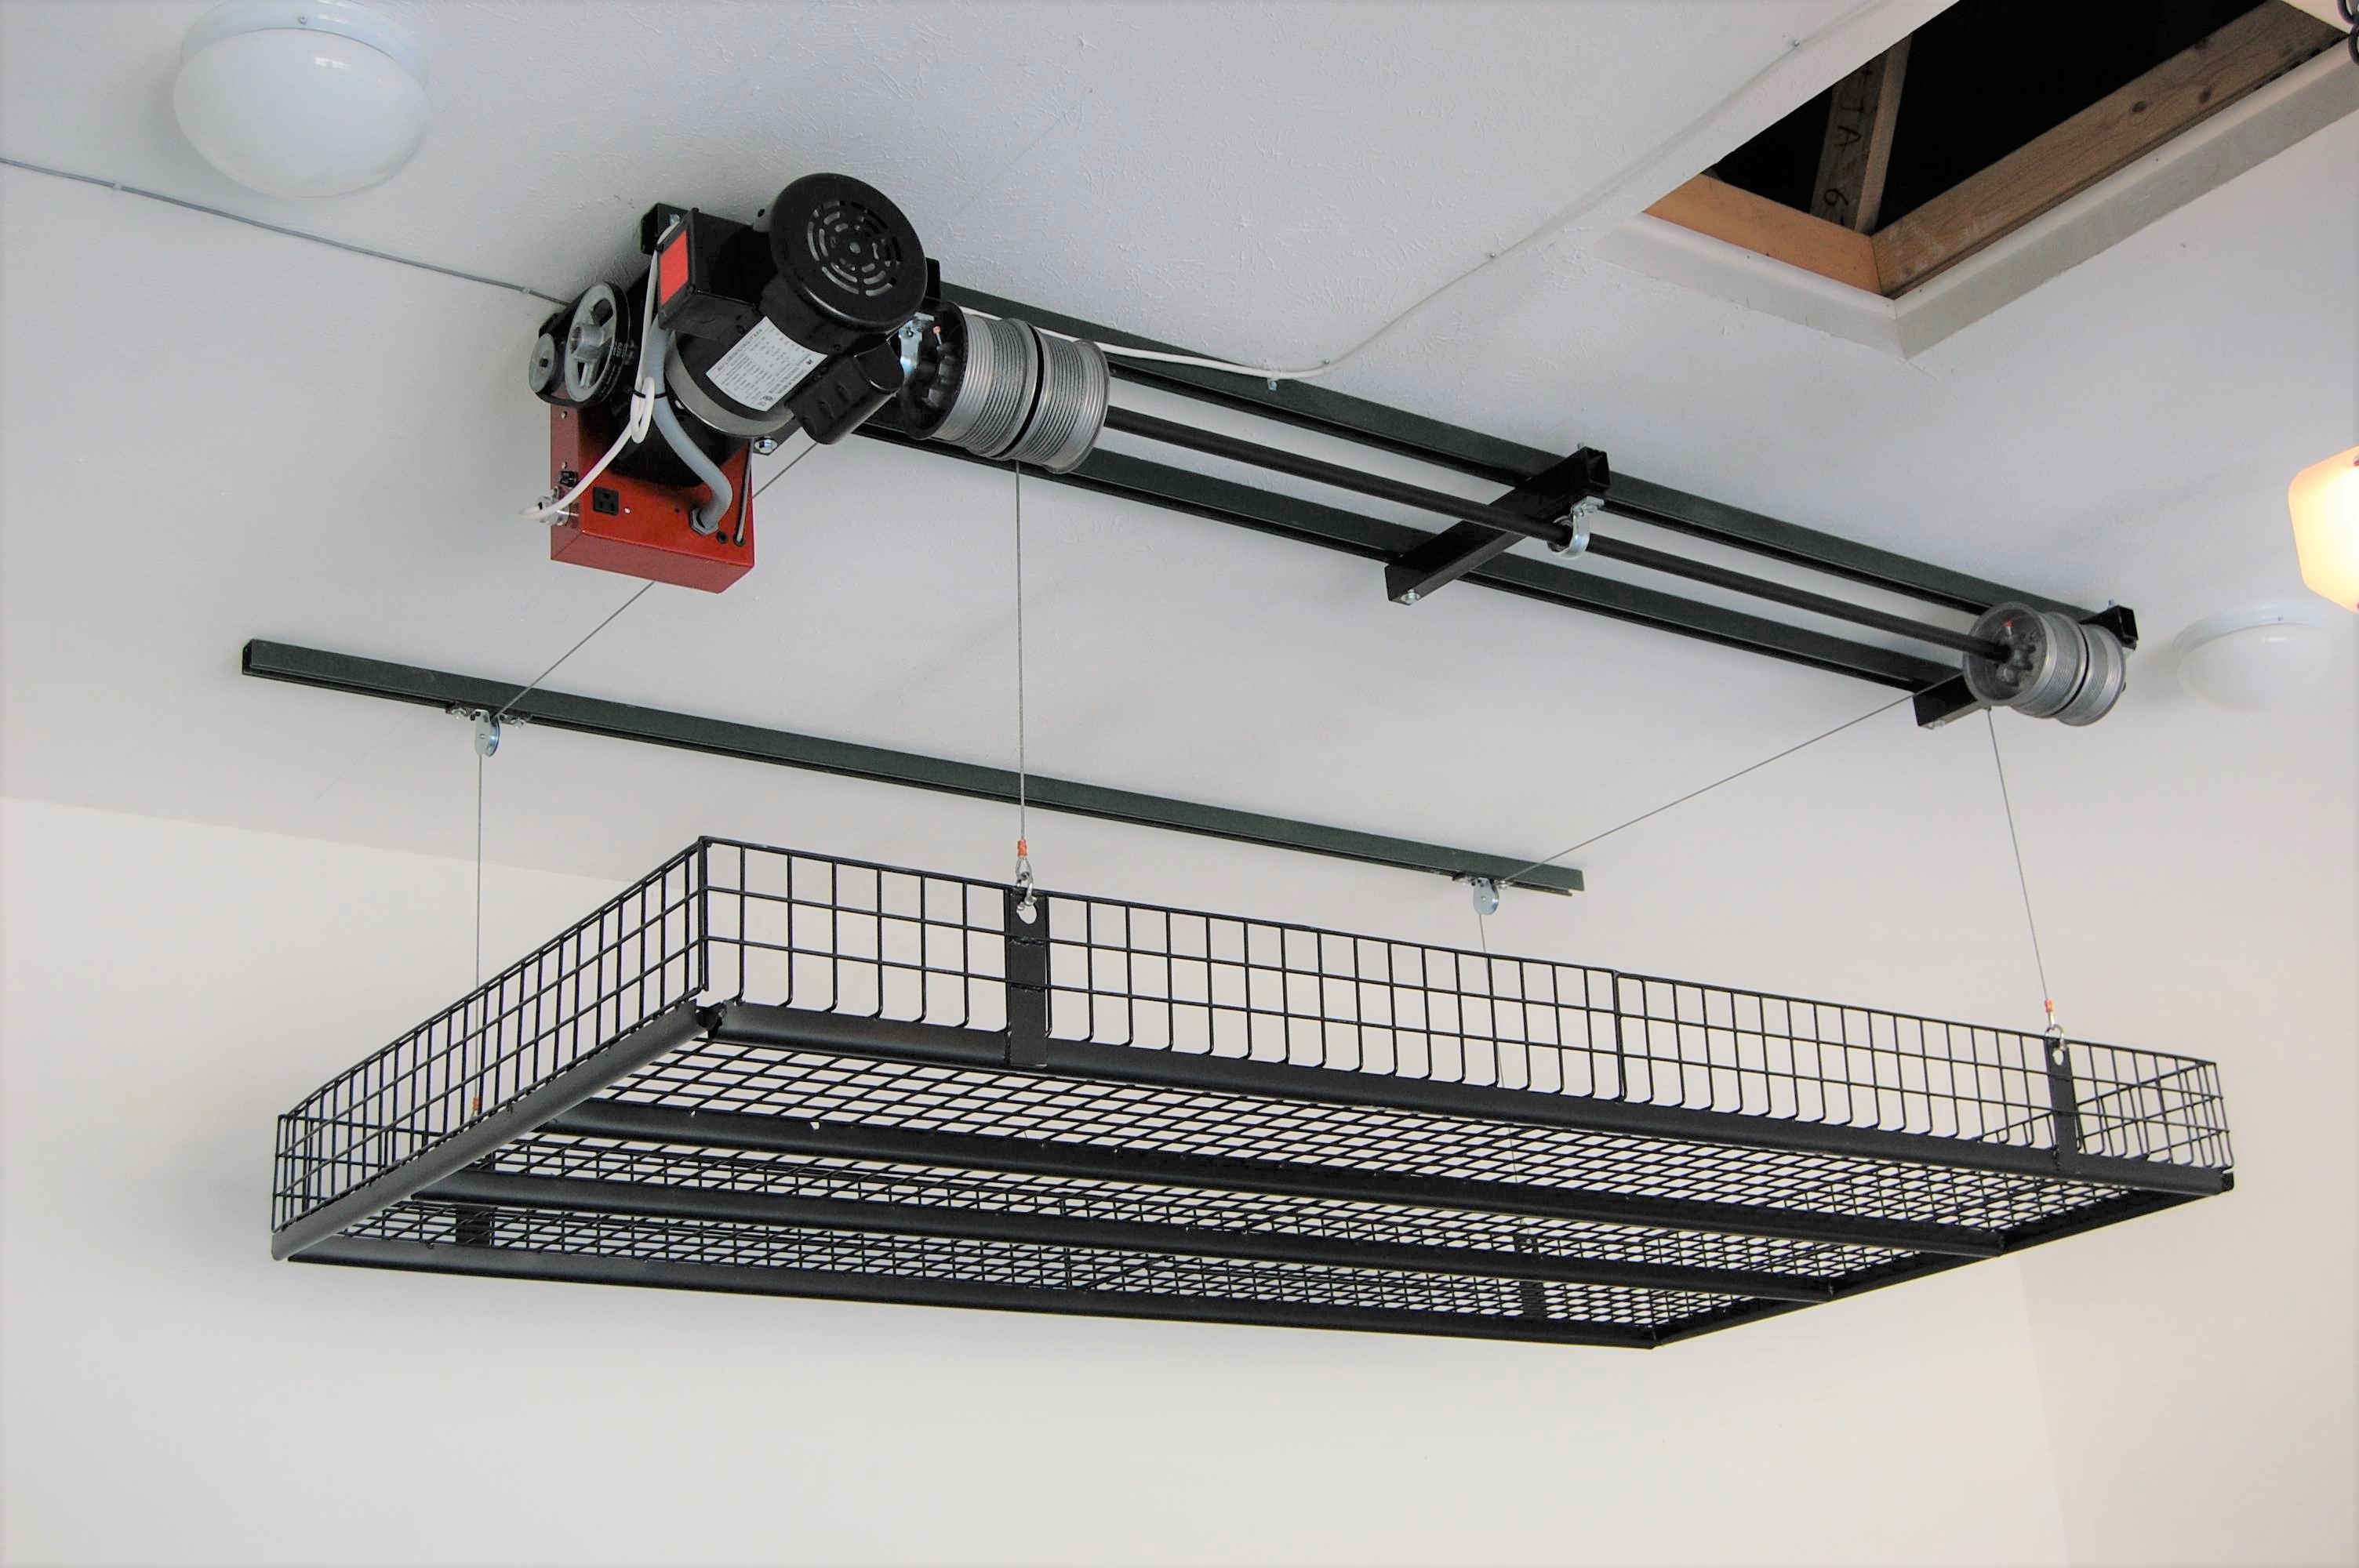 Motorized Overhead Garage Storage Systems Dandk Organizer